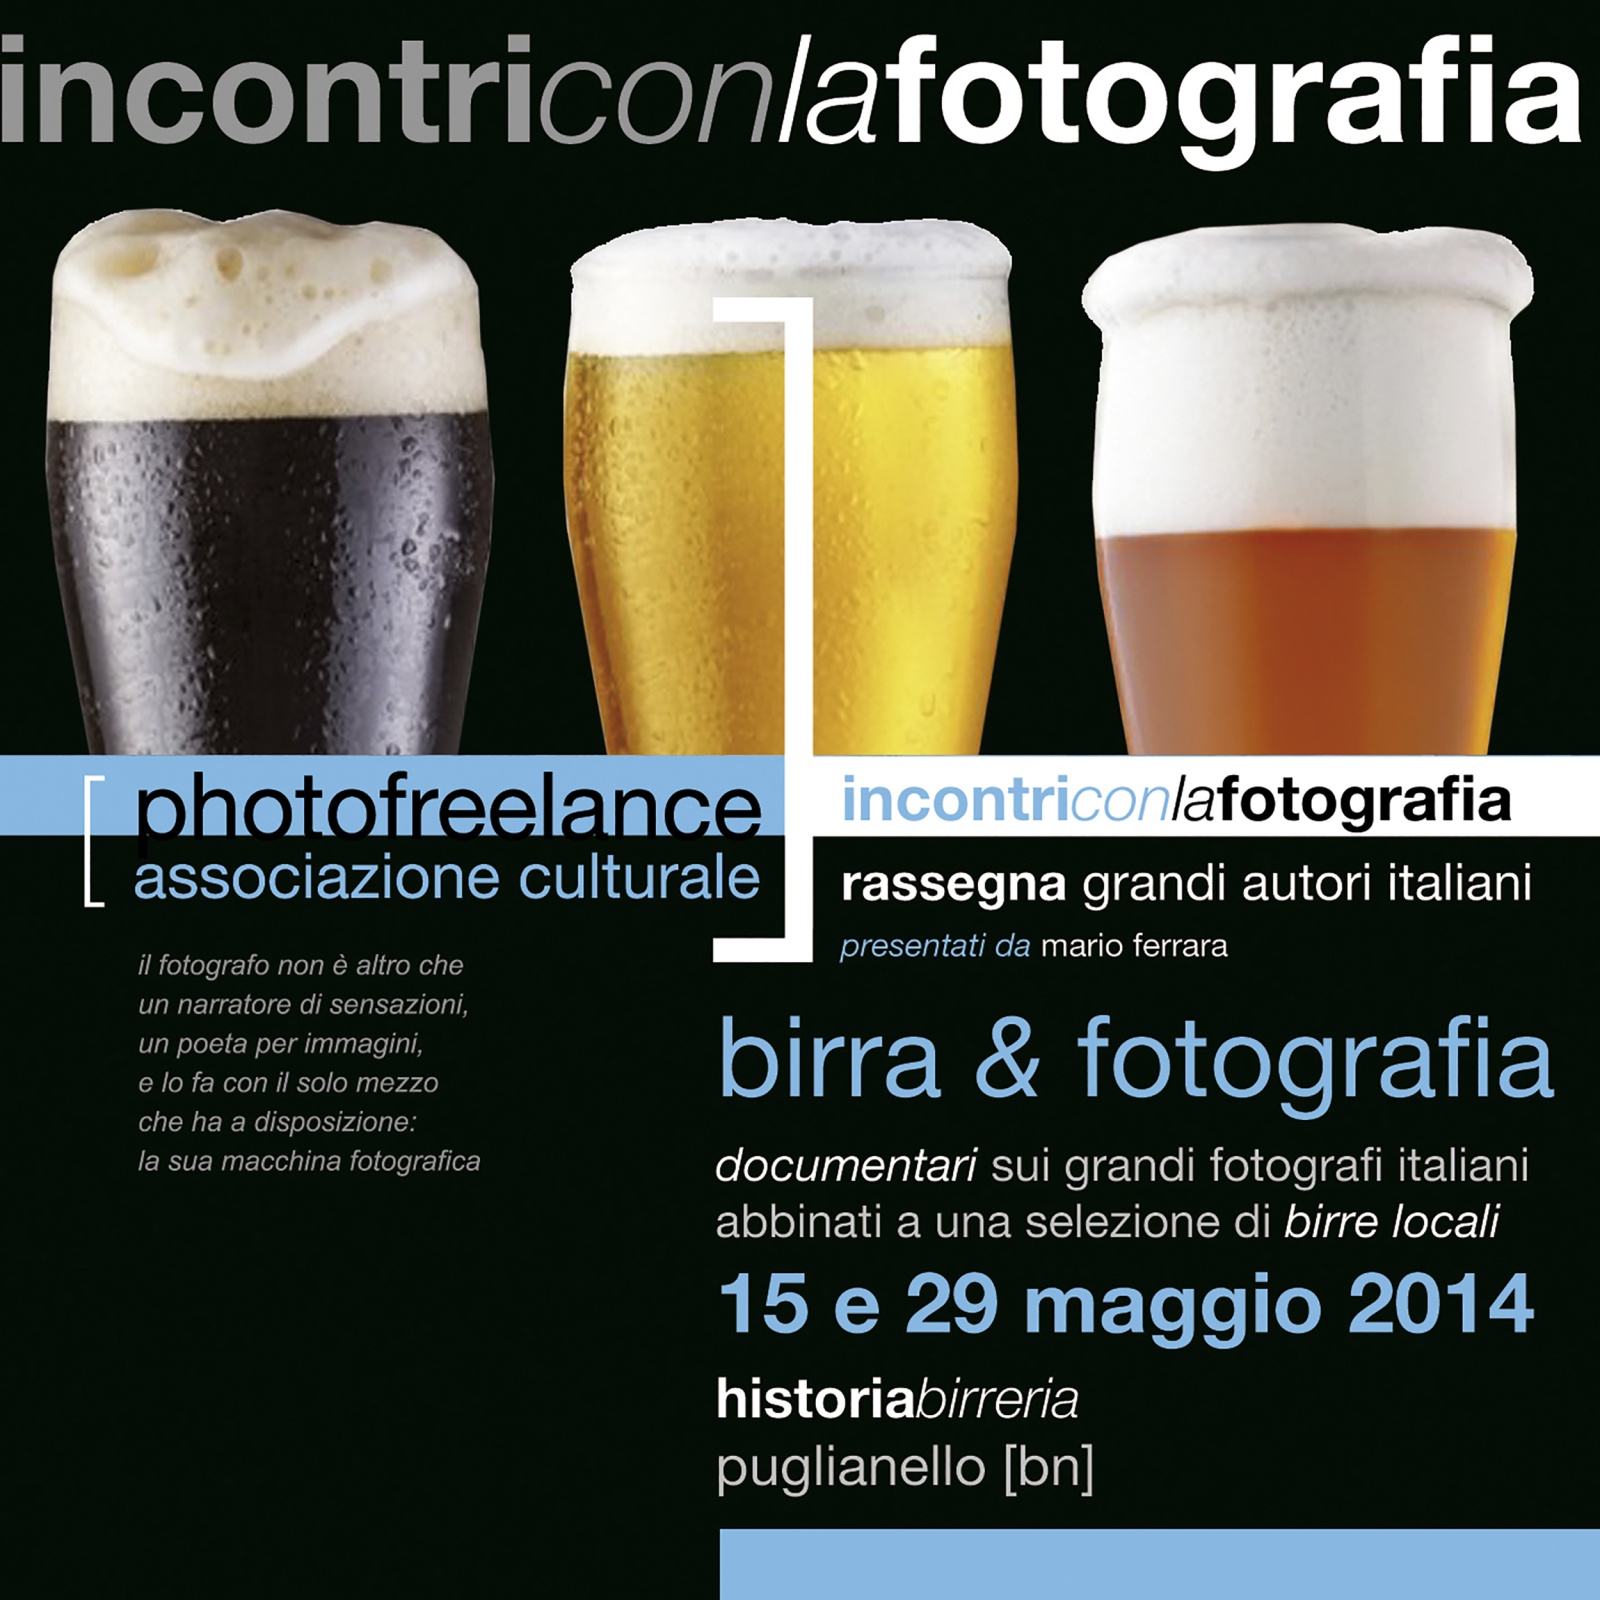 birra e fotografia 2014